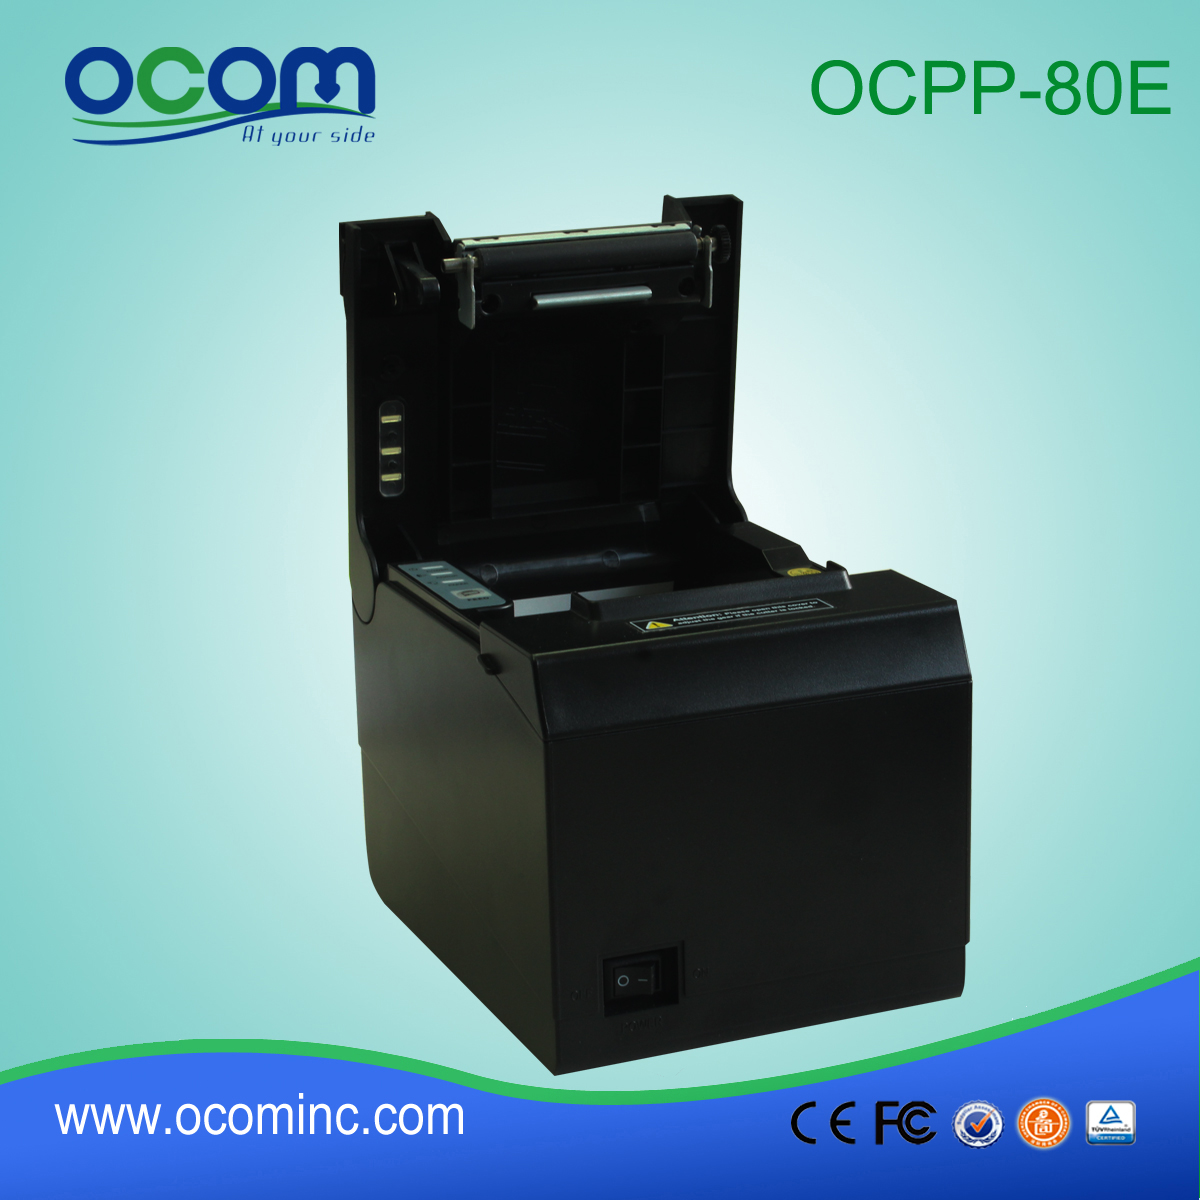 Shenzhen facture d'hôtel pos imprimante thermique de réception (OCPP-80E)